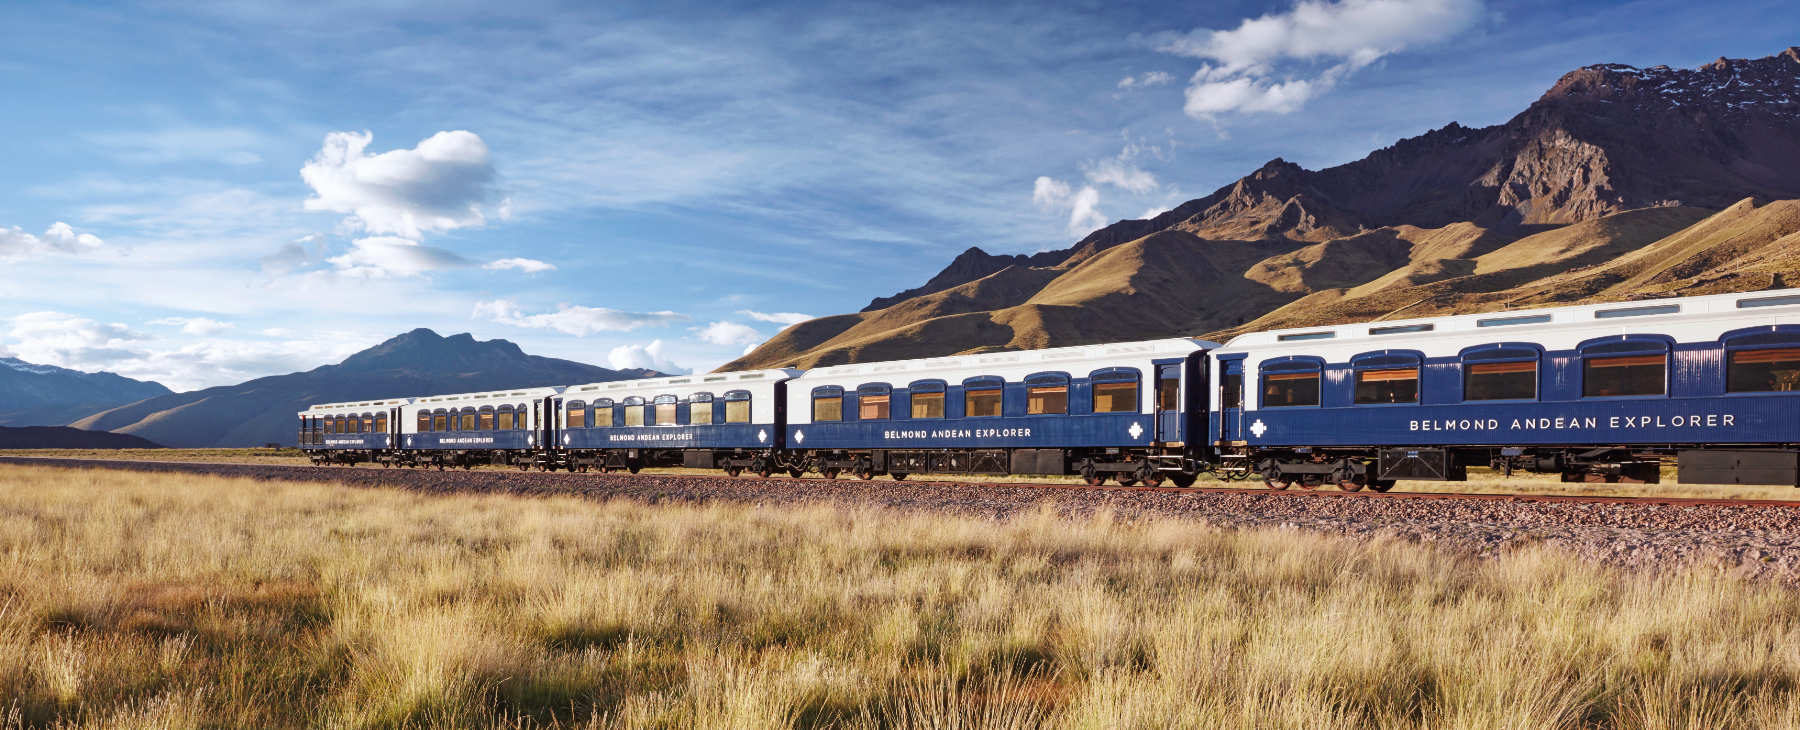 Luxus Zugreisen Peru Zug Belmond Andean Explorer